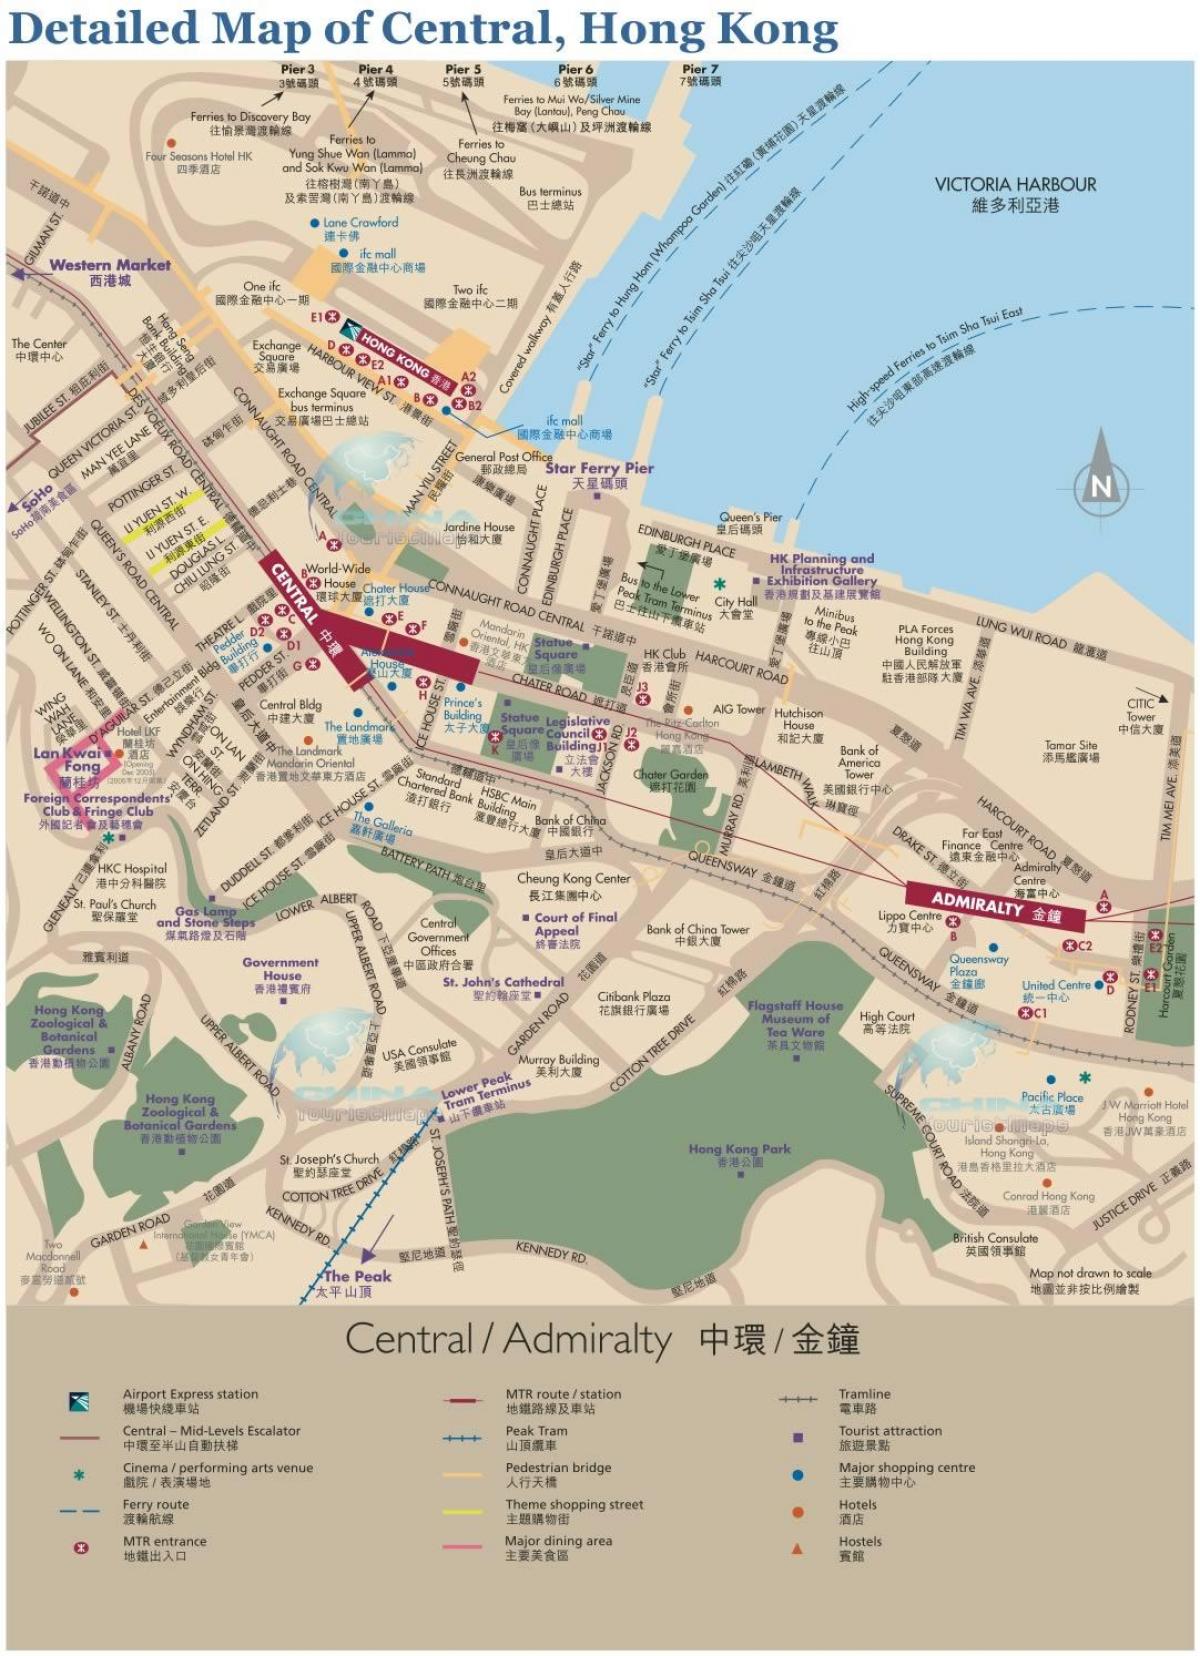 هونغ كونغ المركزية خريطة